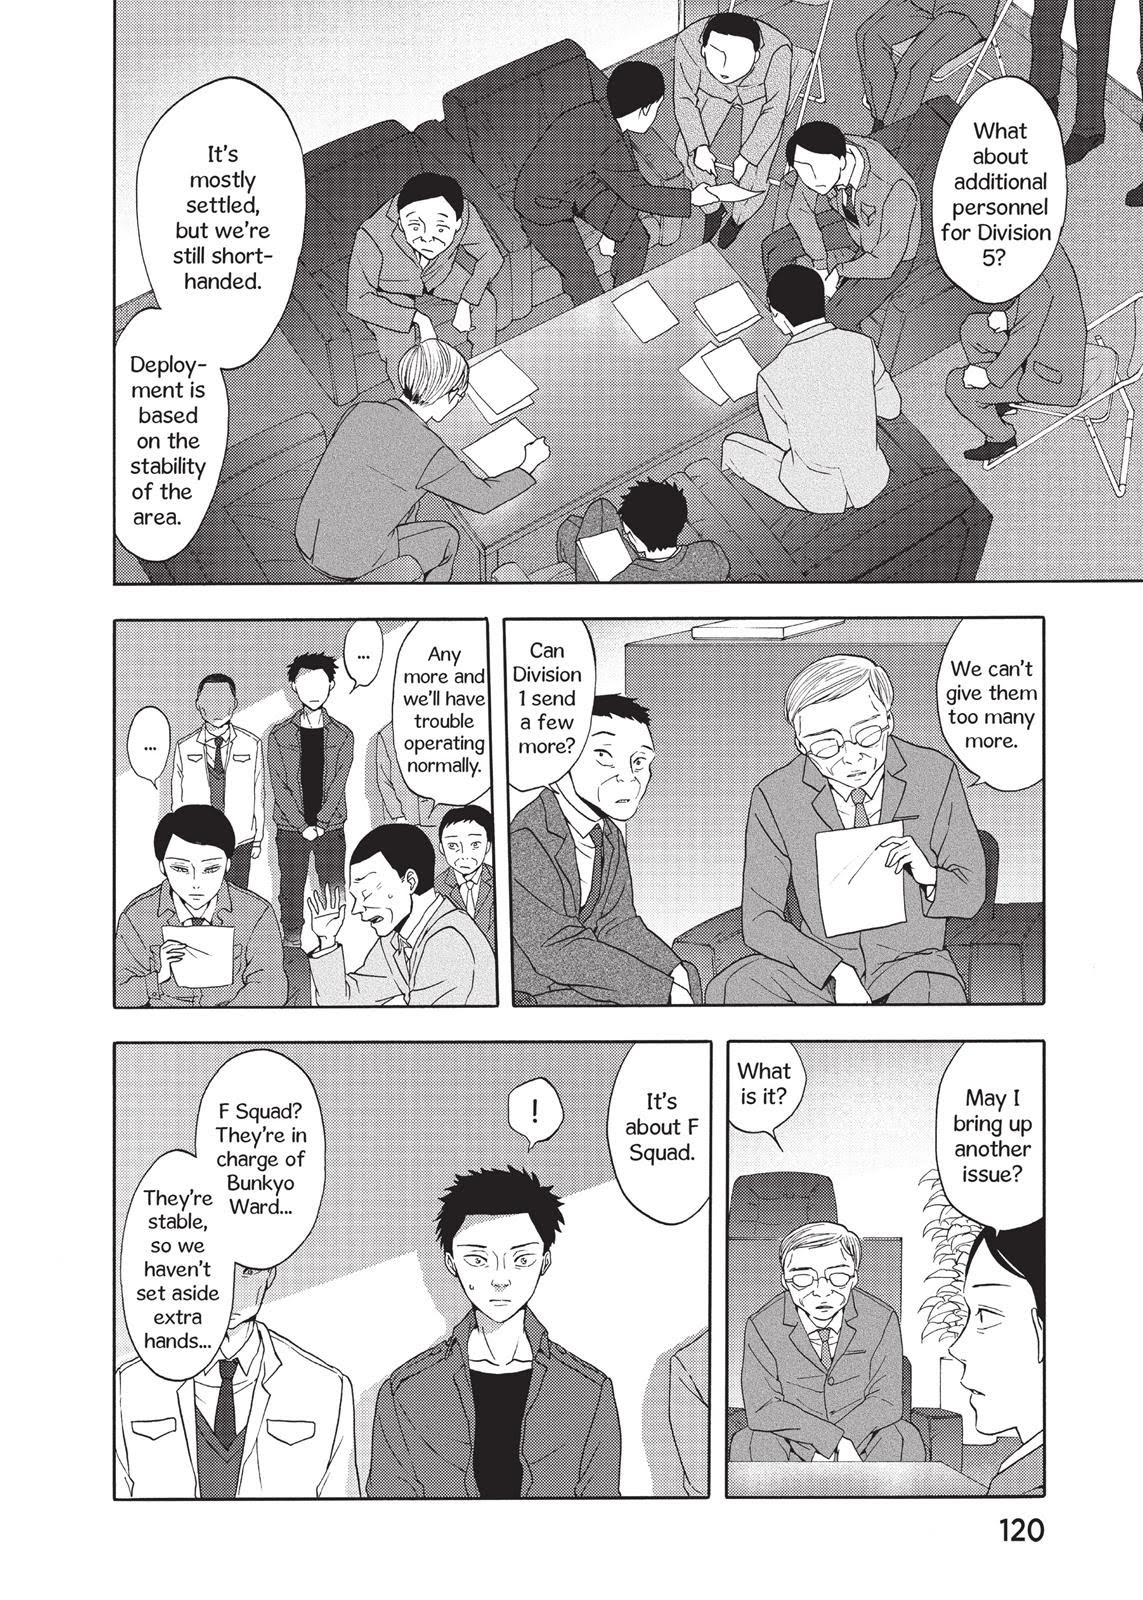 Devils Line, Chapter 25 - Devils Line Manga Online